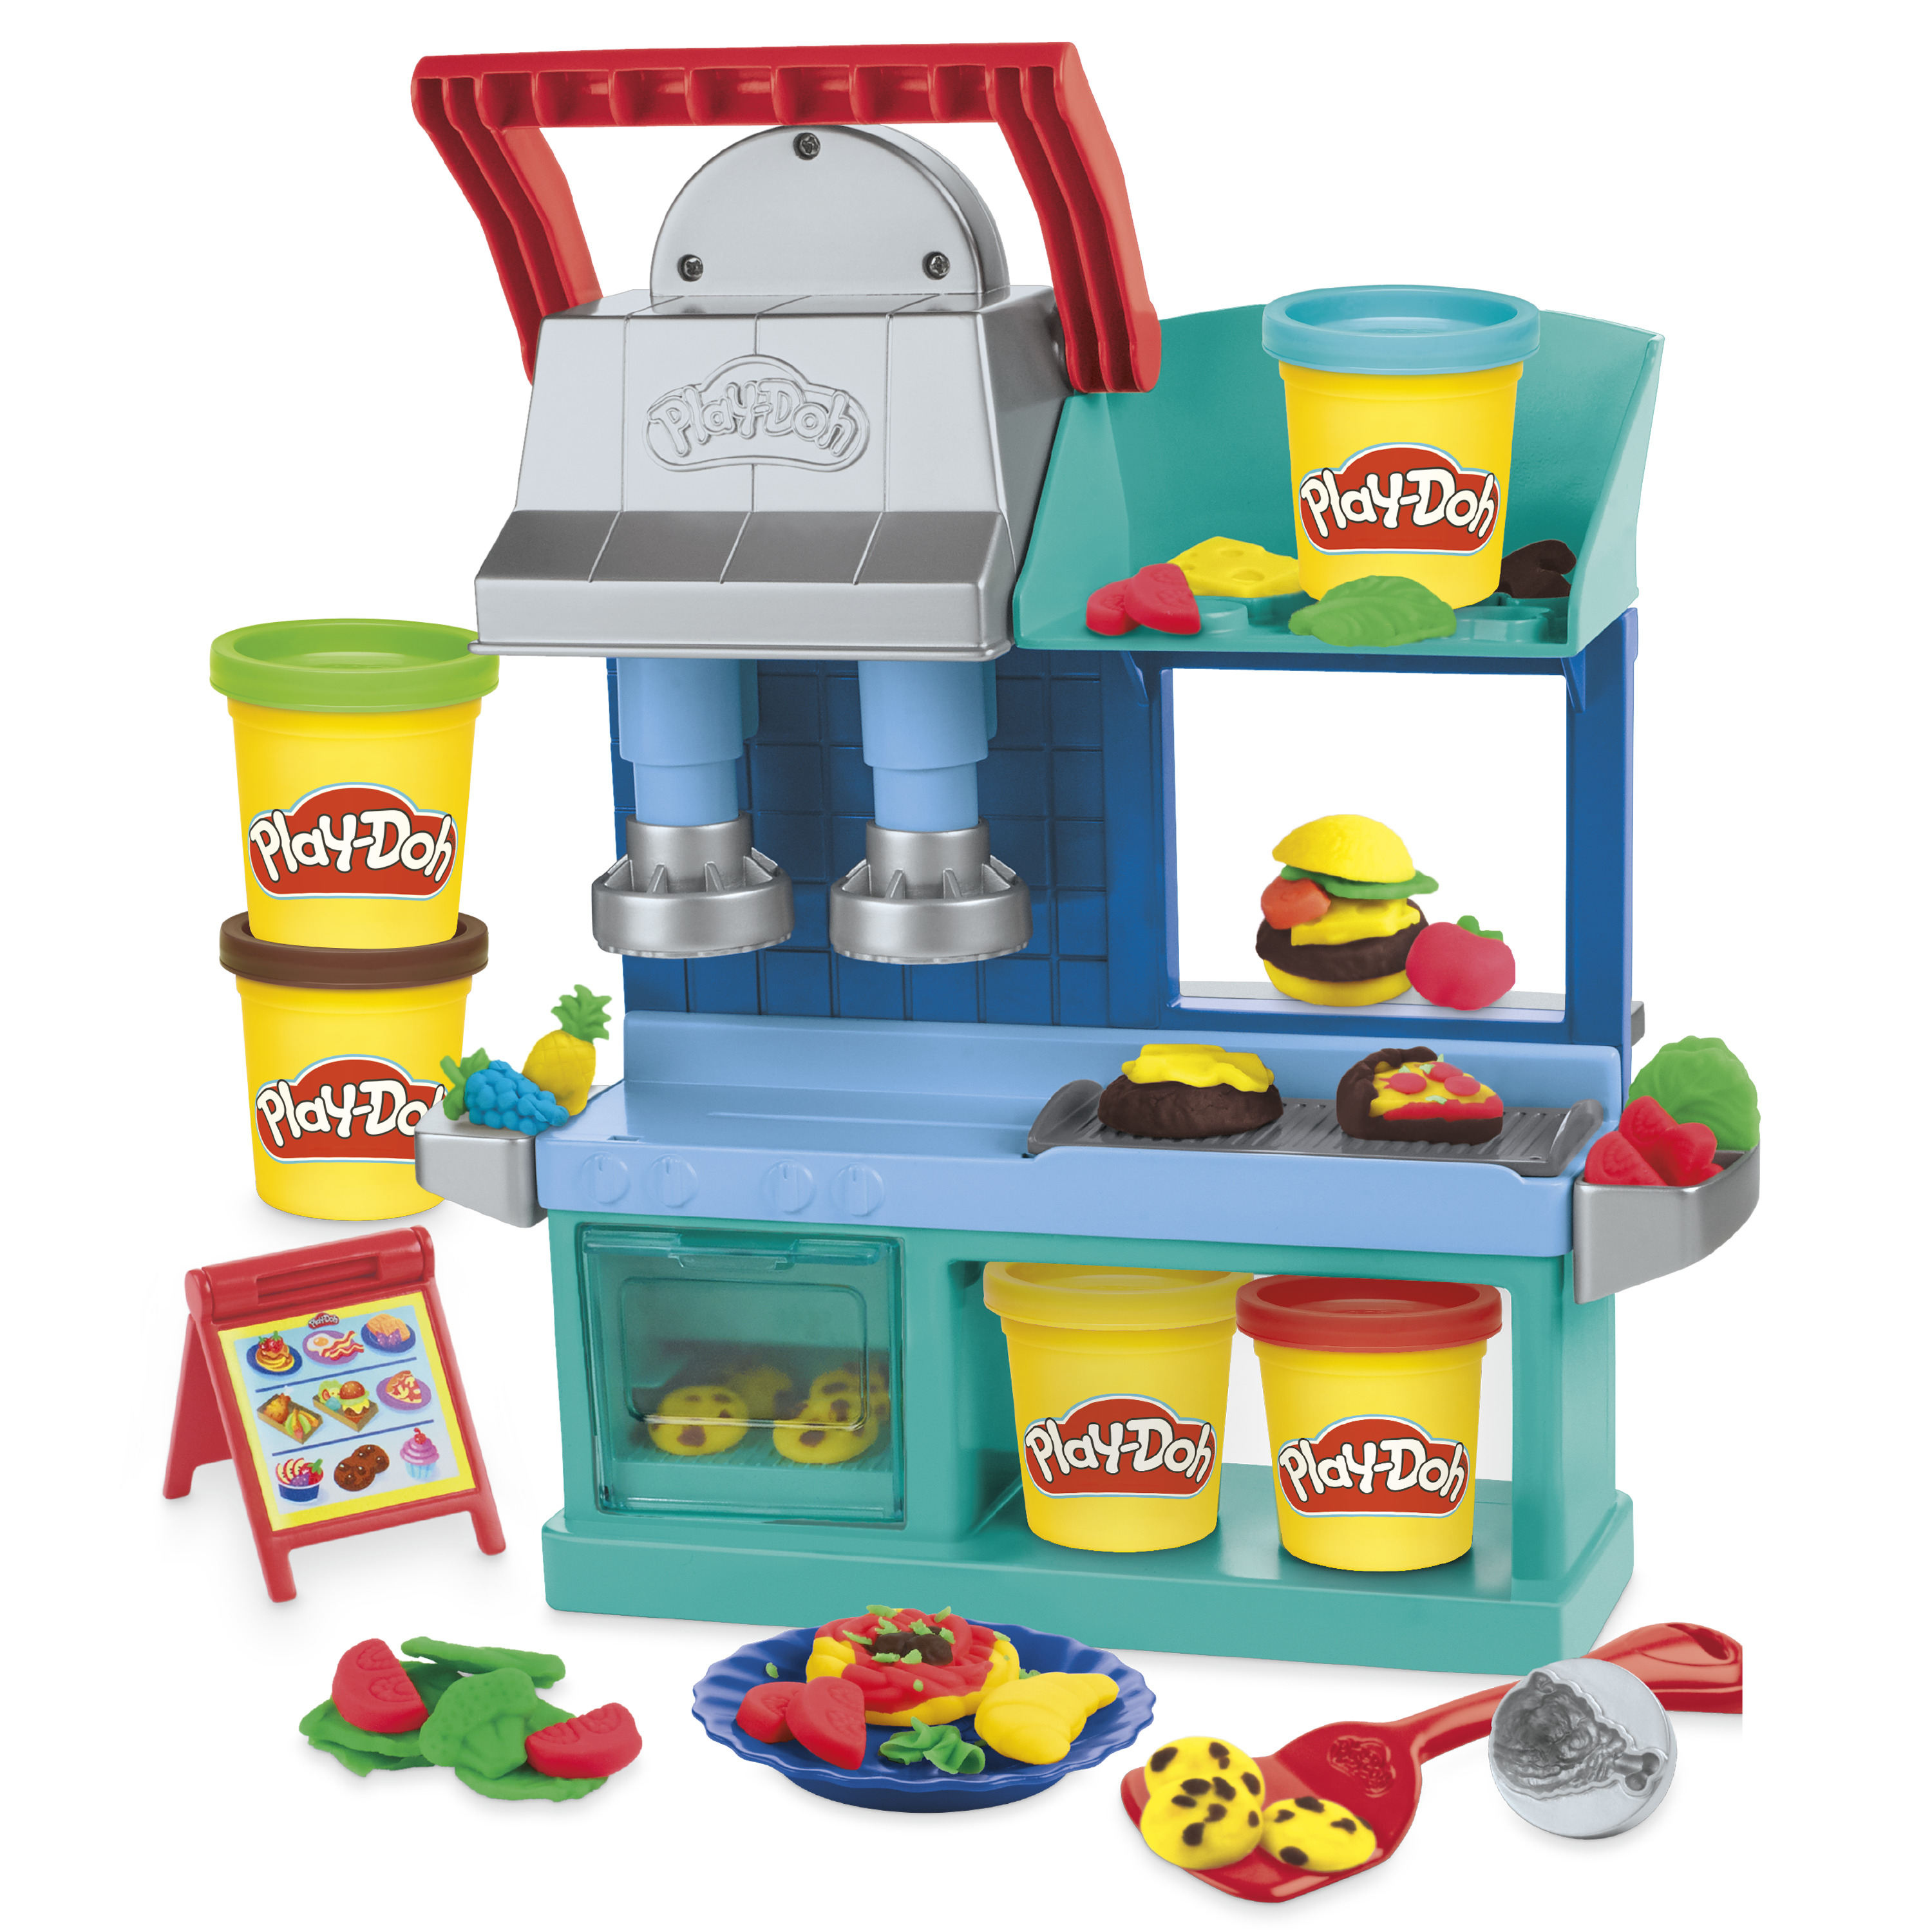 Play-Doh - Coffre à outils, ensemble d'outils avec 3 couleurs de